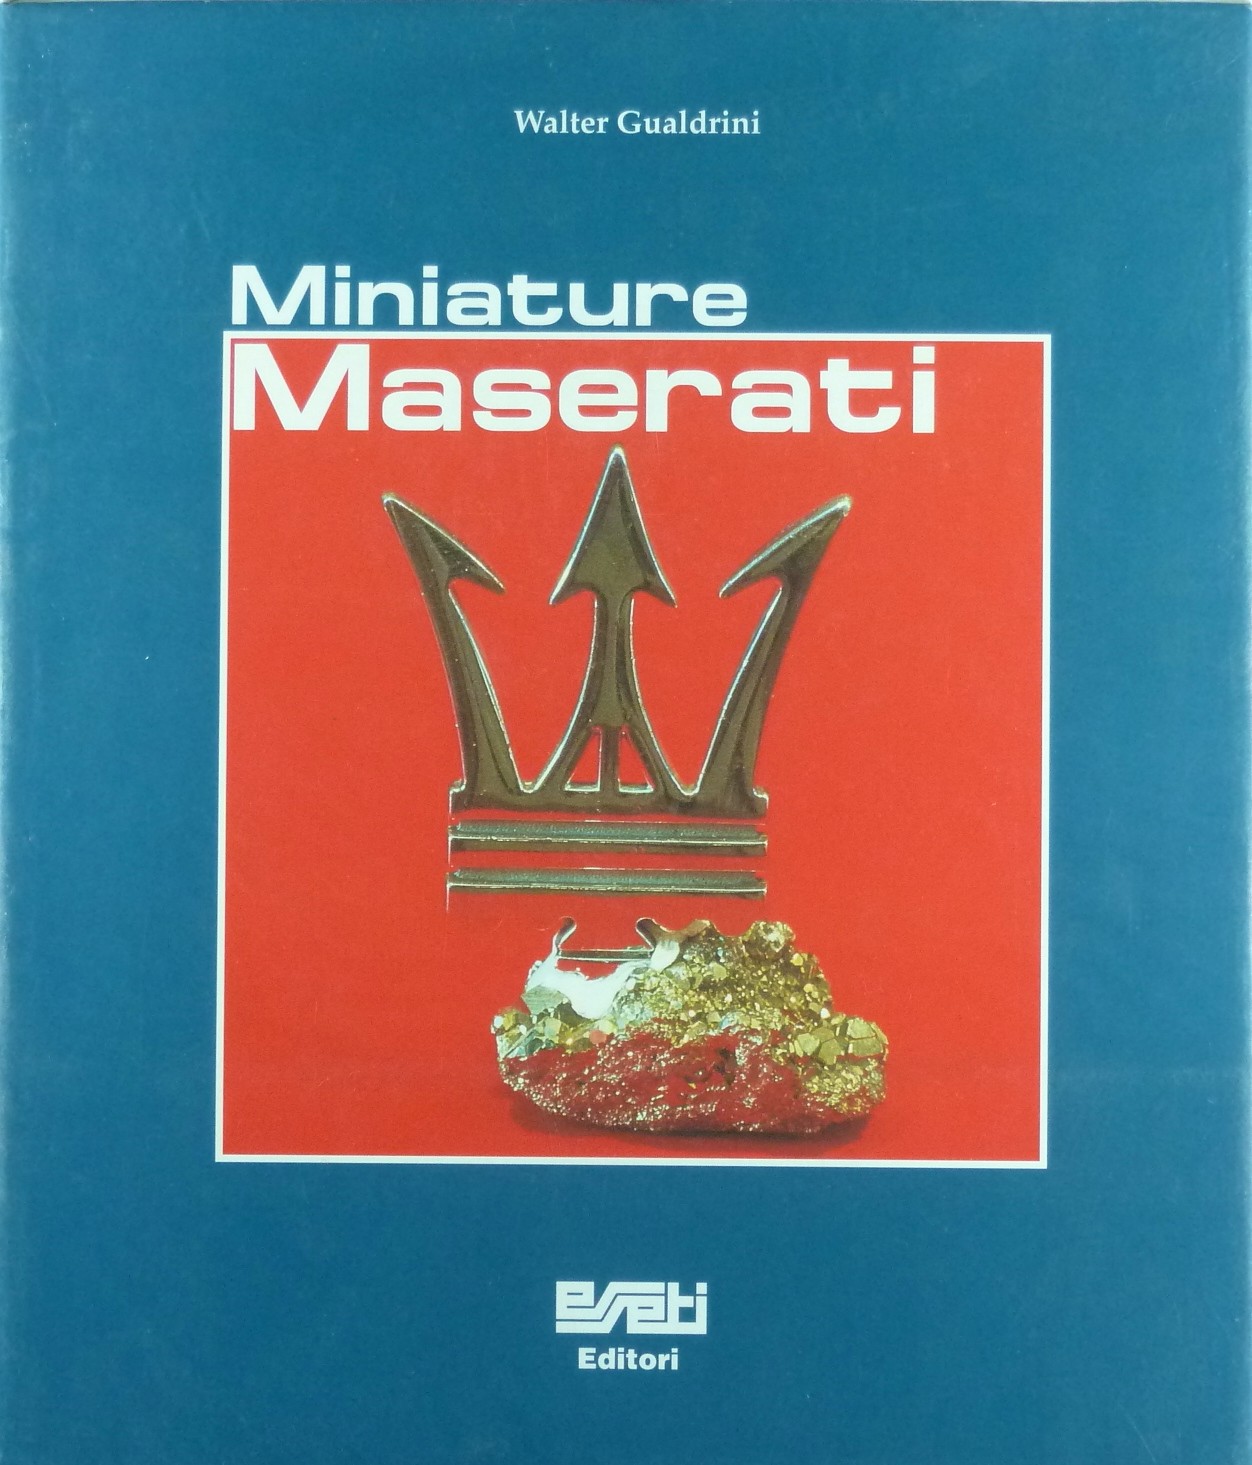 Soldes Miniature Maserati - Nos bonnes affaires de janvier